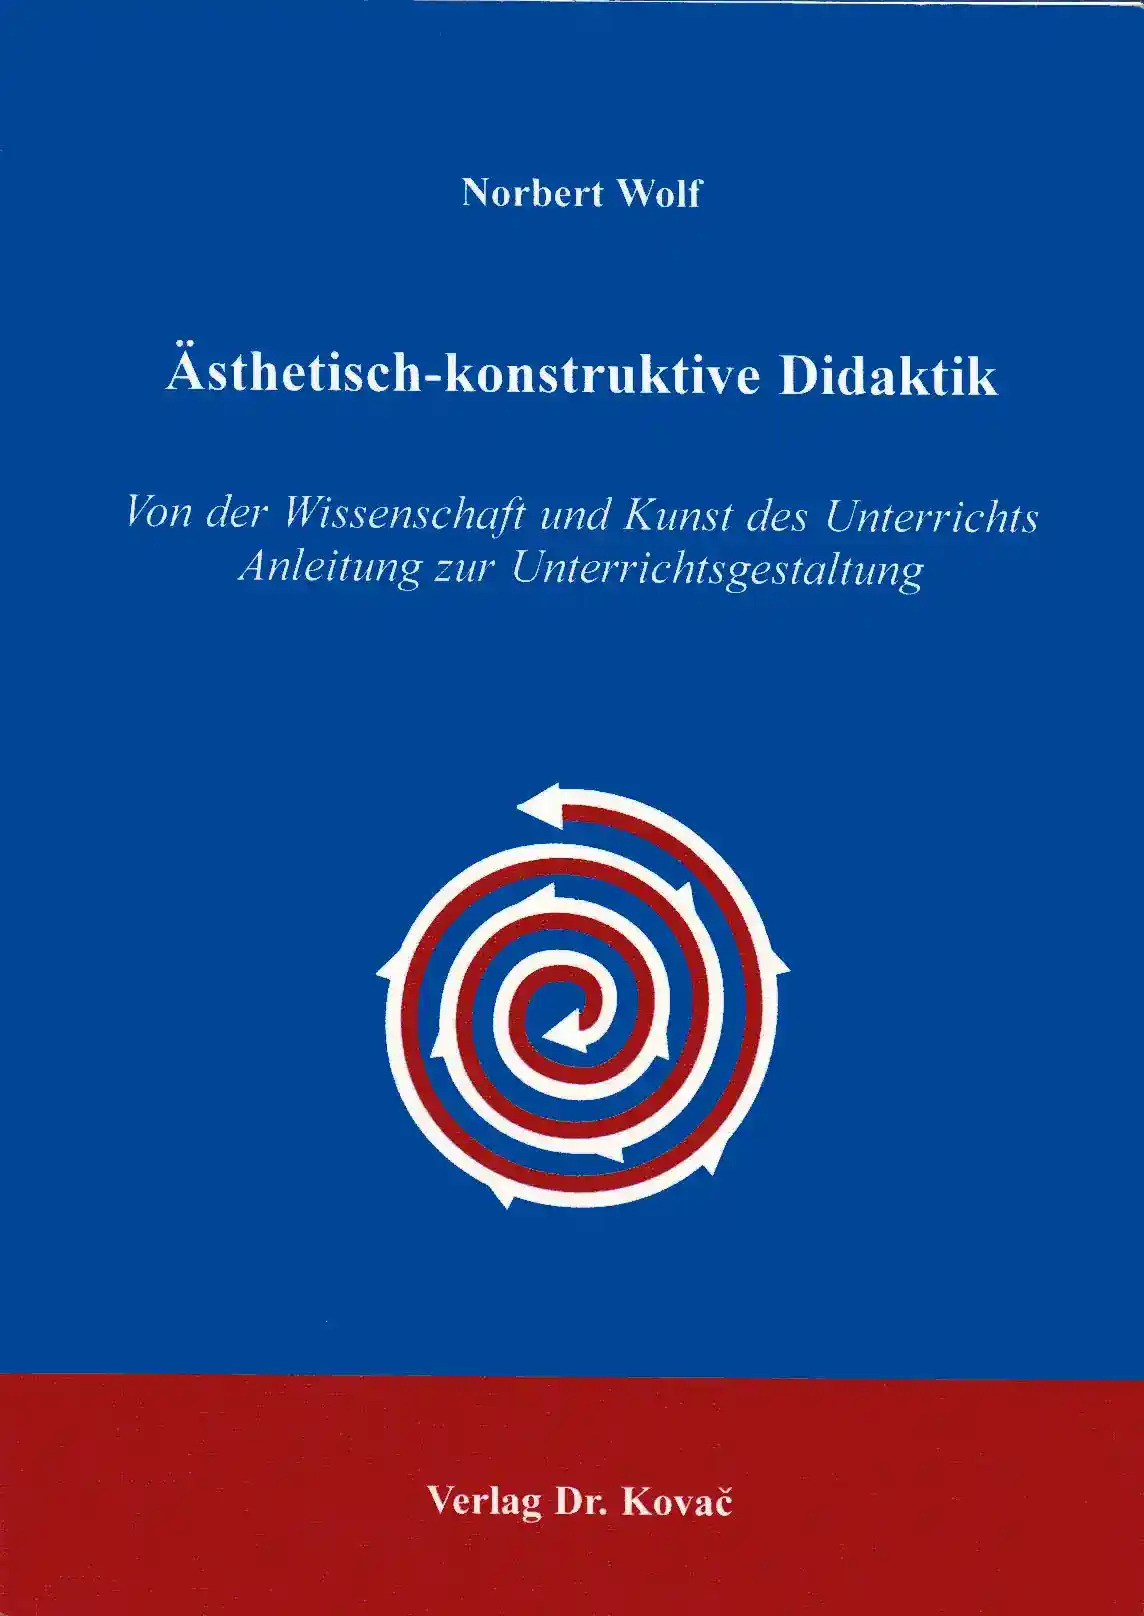  Forschungsarbeit: Ästhetischkonstruktive Didaktik